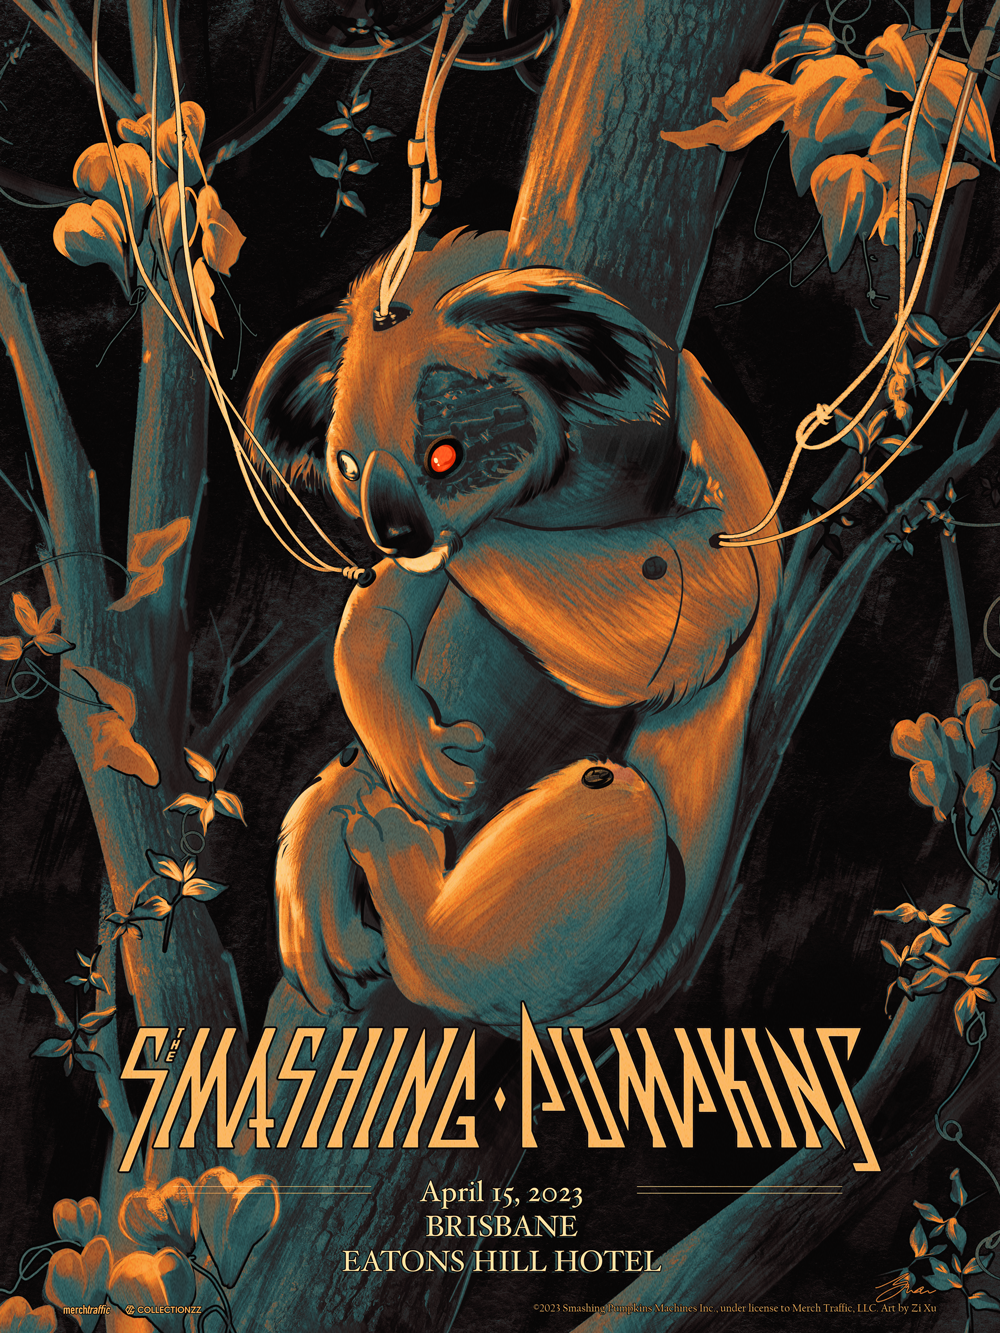 The Smashing Pumpkins Brisbane April 15, 2023 Print